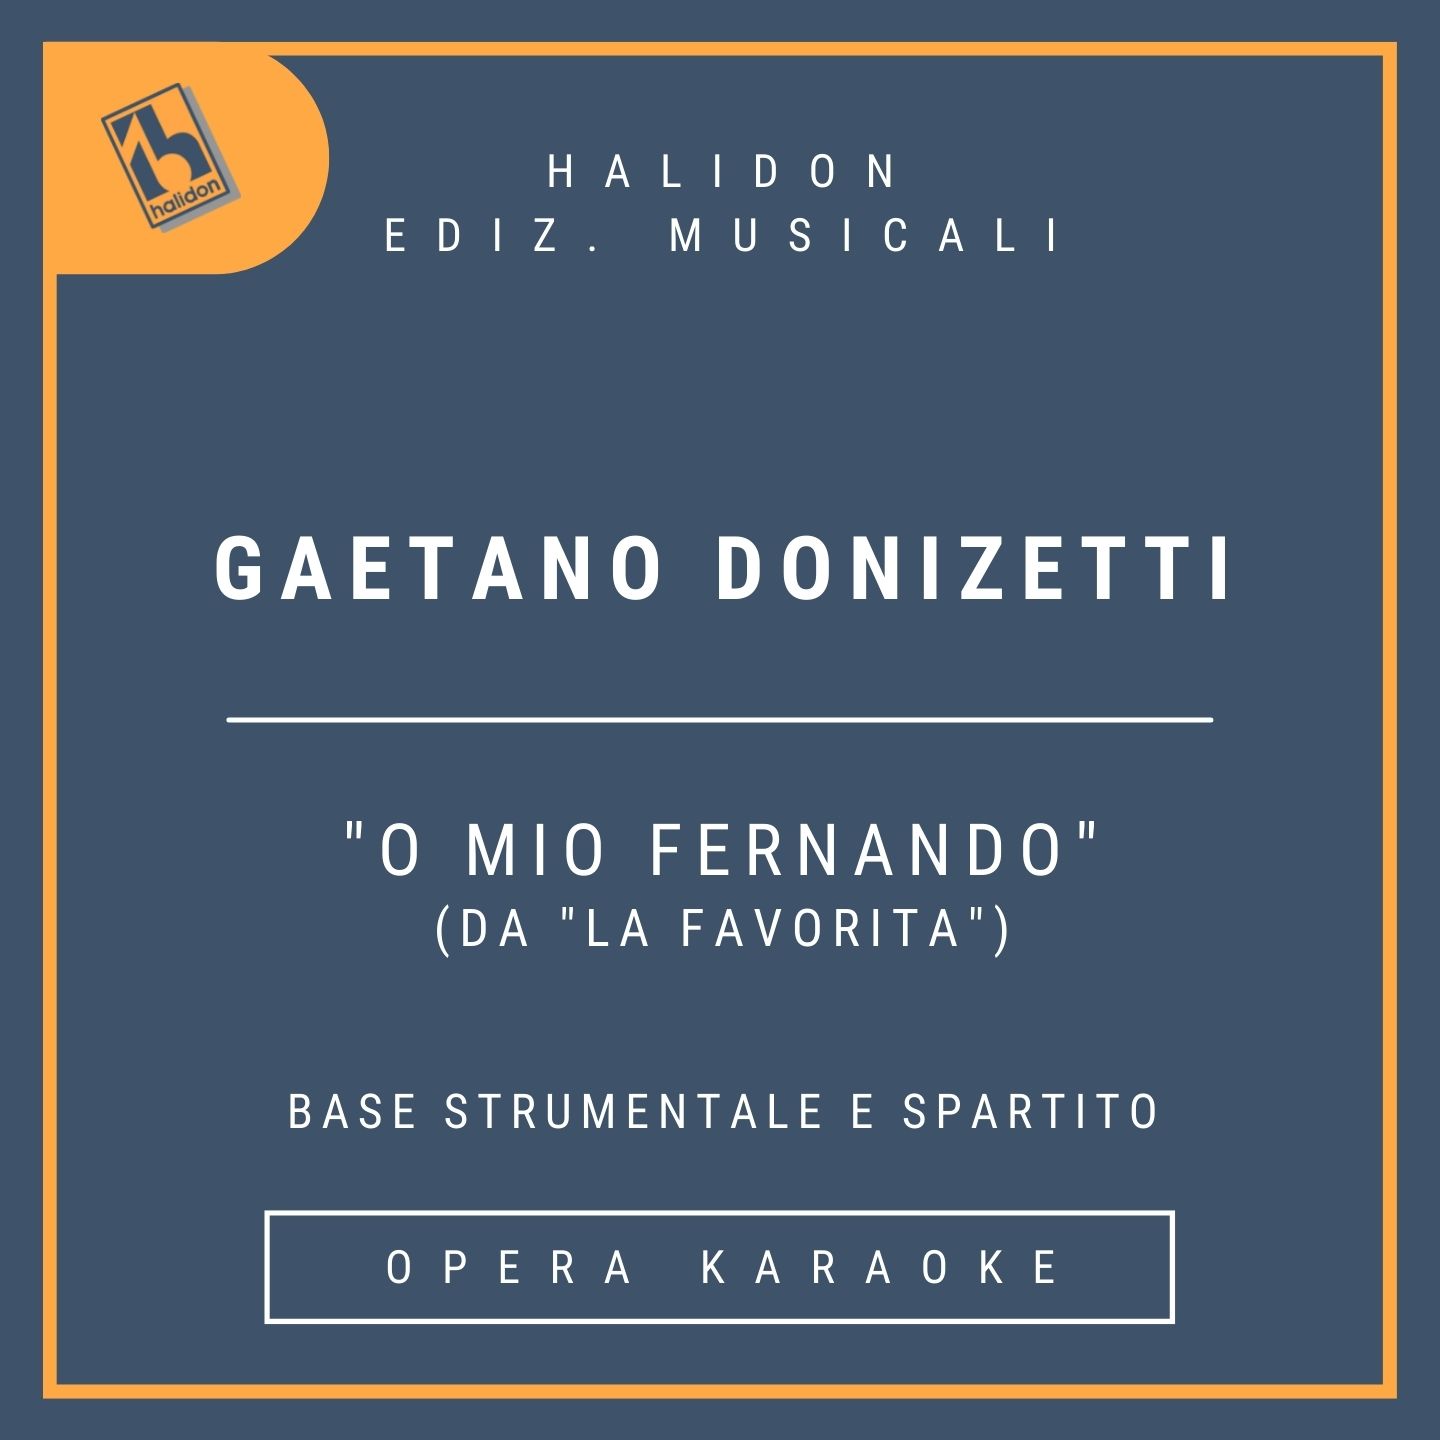 Gaetano Donizetti - O mio Fernando (from 'La favorita') - Leonora's Aria (mezzo) - Instrumental track + sheet